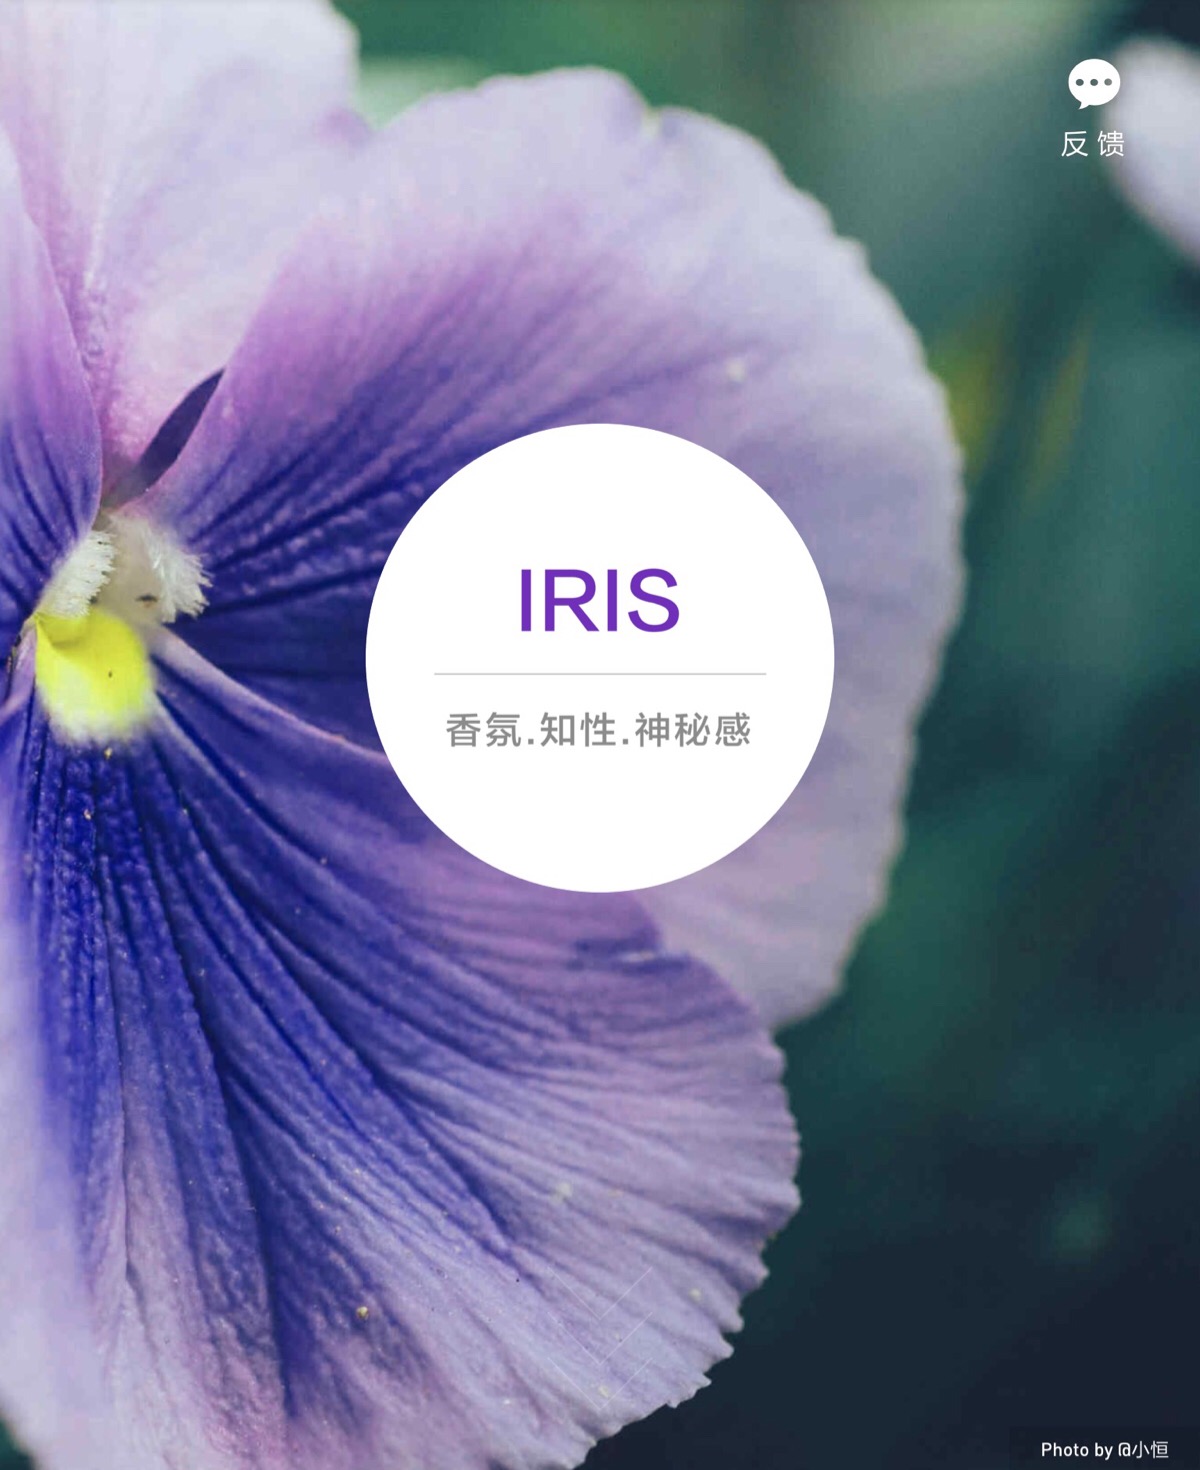 iris是谁图片